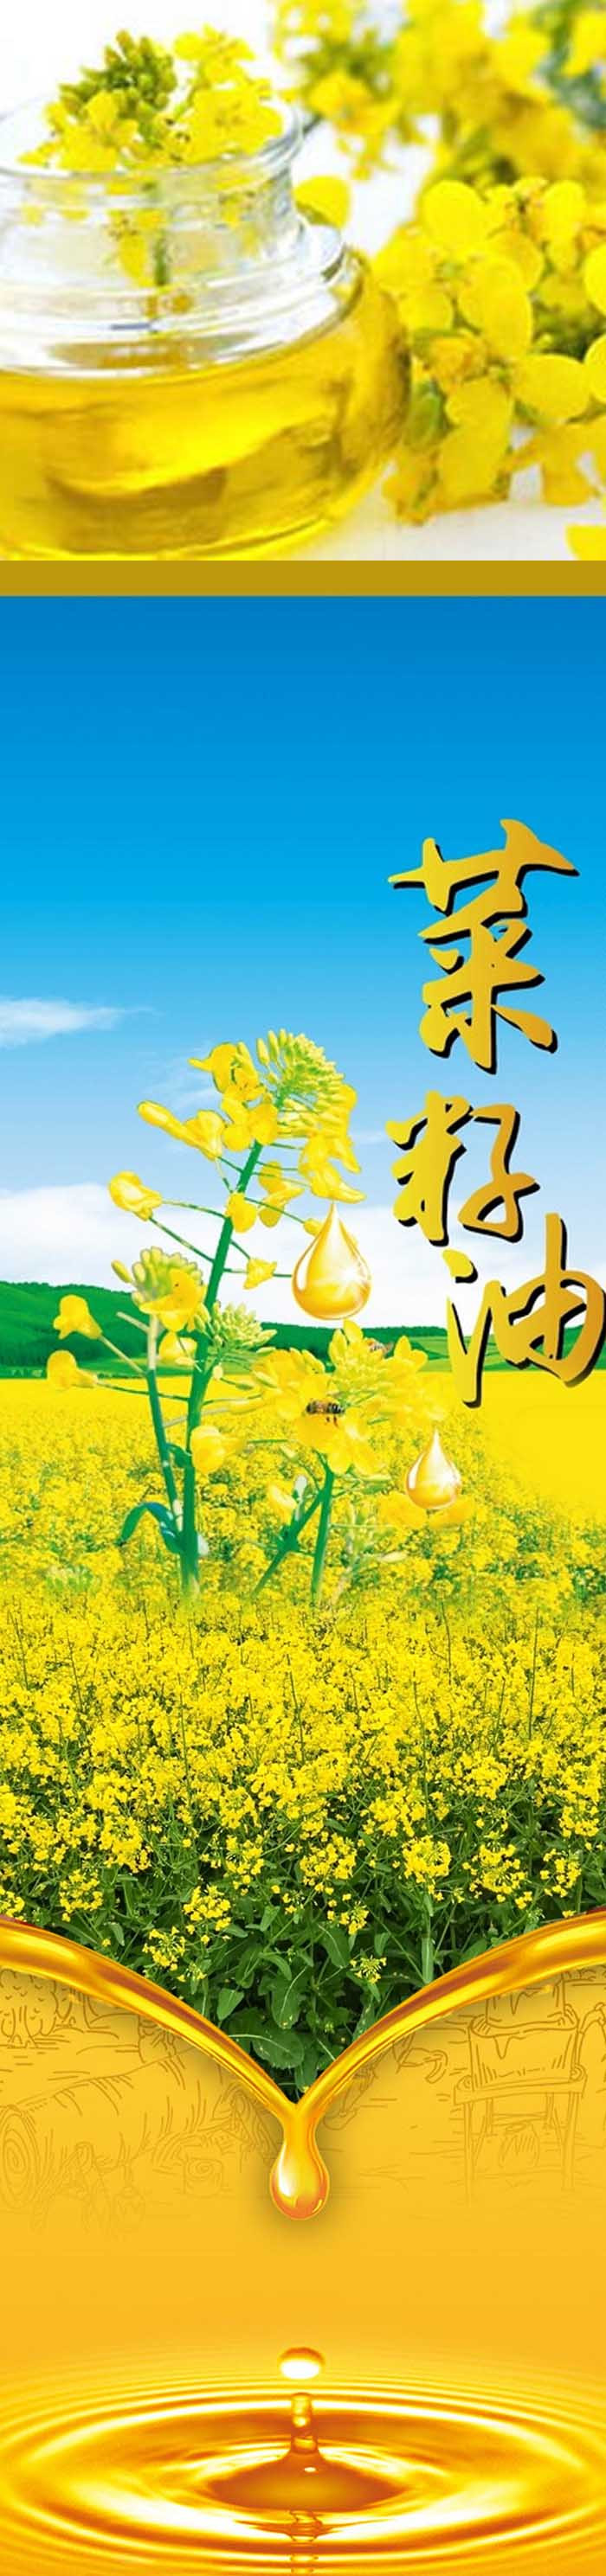  洛阳农品 手绘小镇 鲜榨菜籽油5L嵩县特产传统工艺低温压榨优质食用油